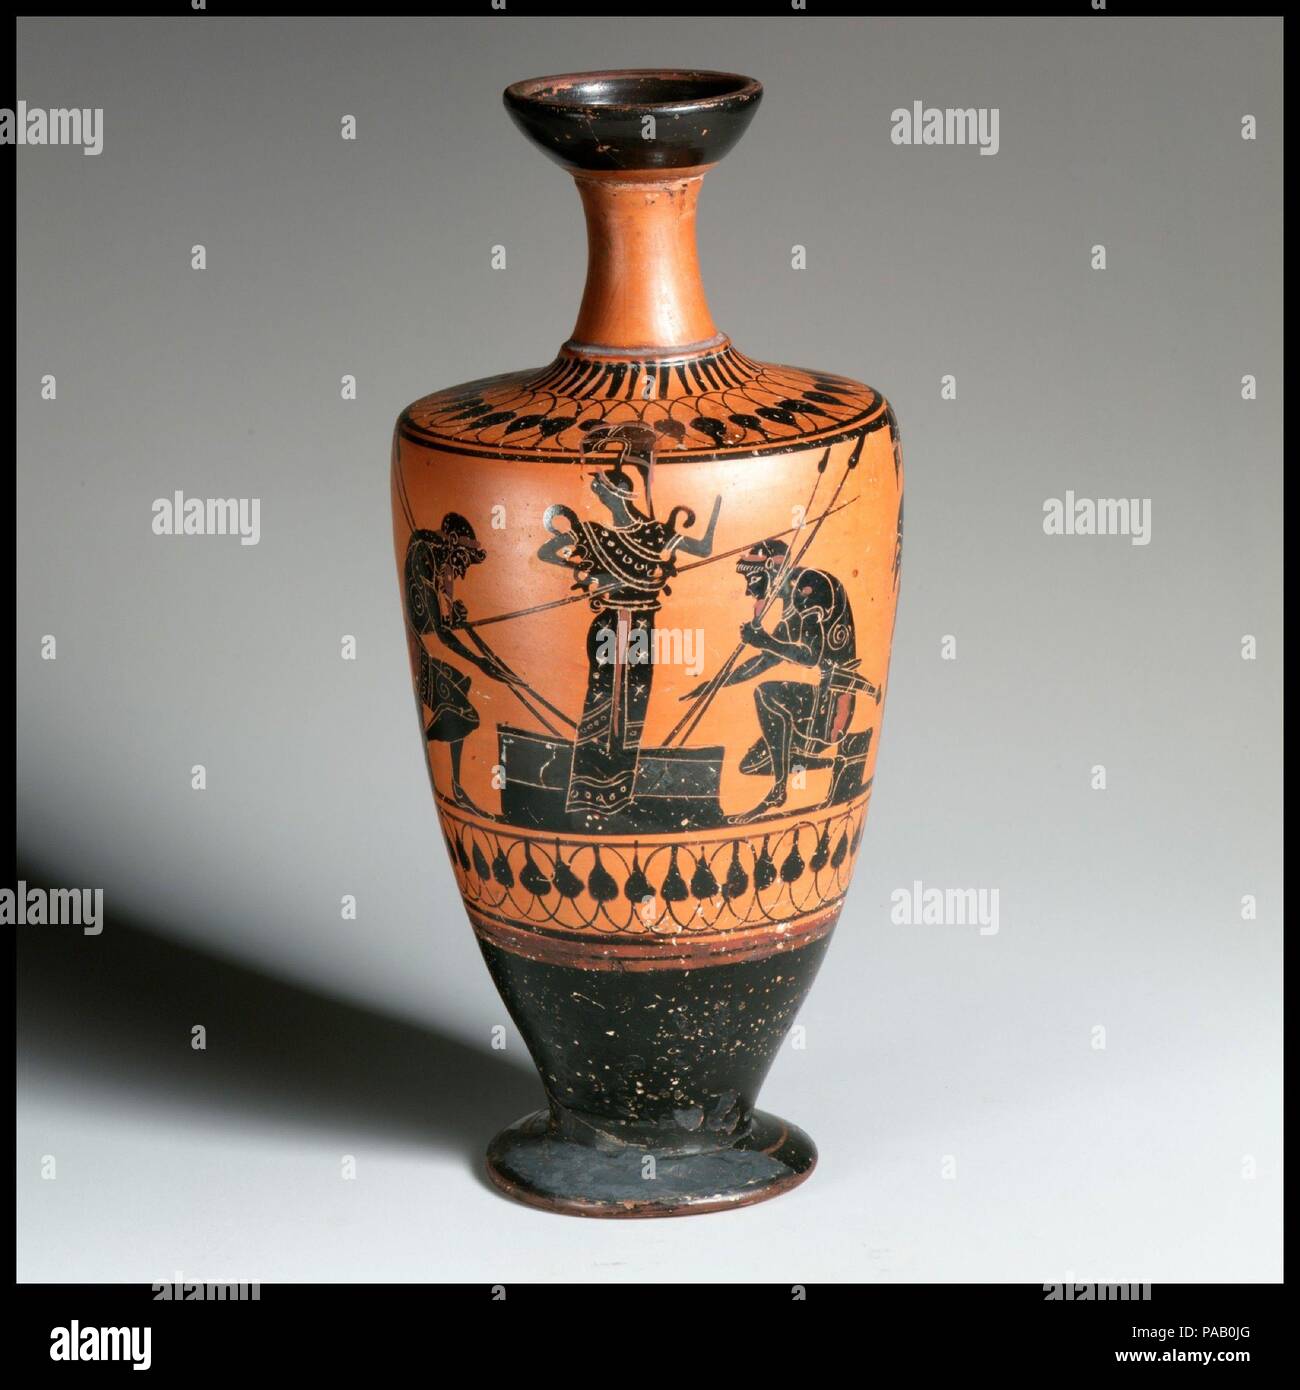 الإيمان تبسيط مرضي achilles ajax athena vase pottery 